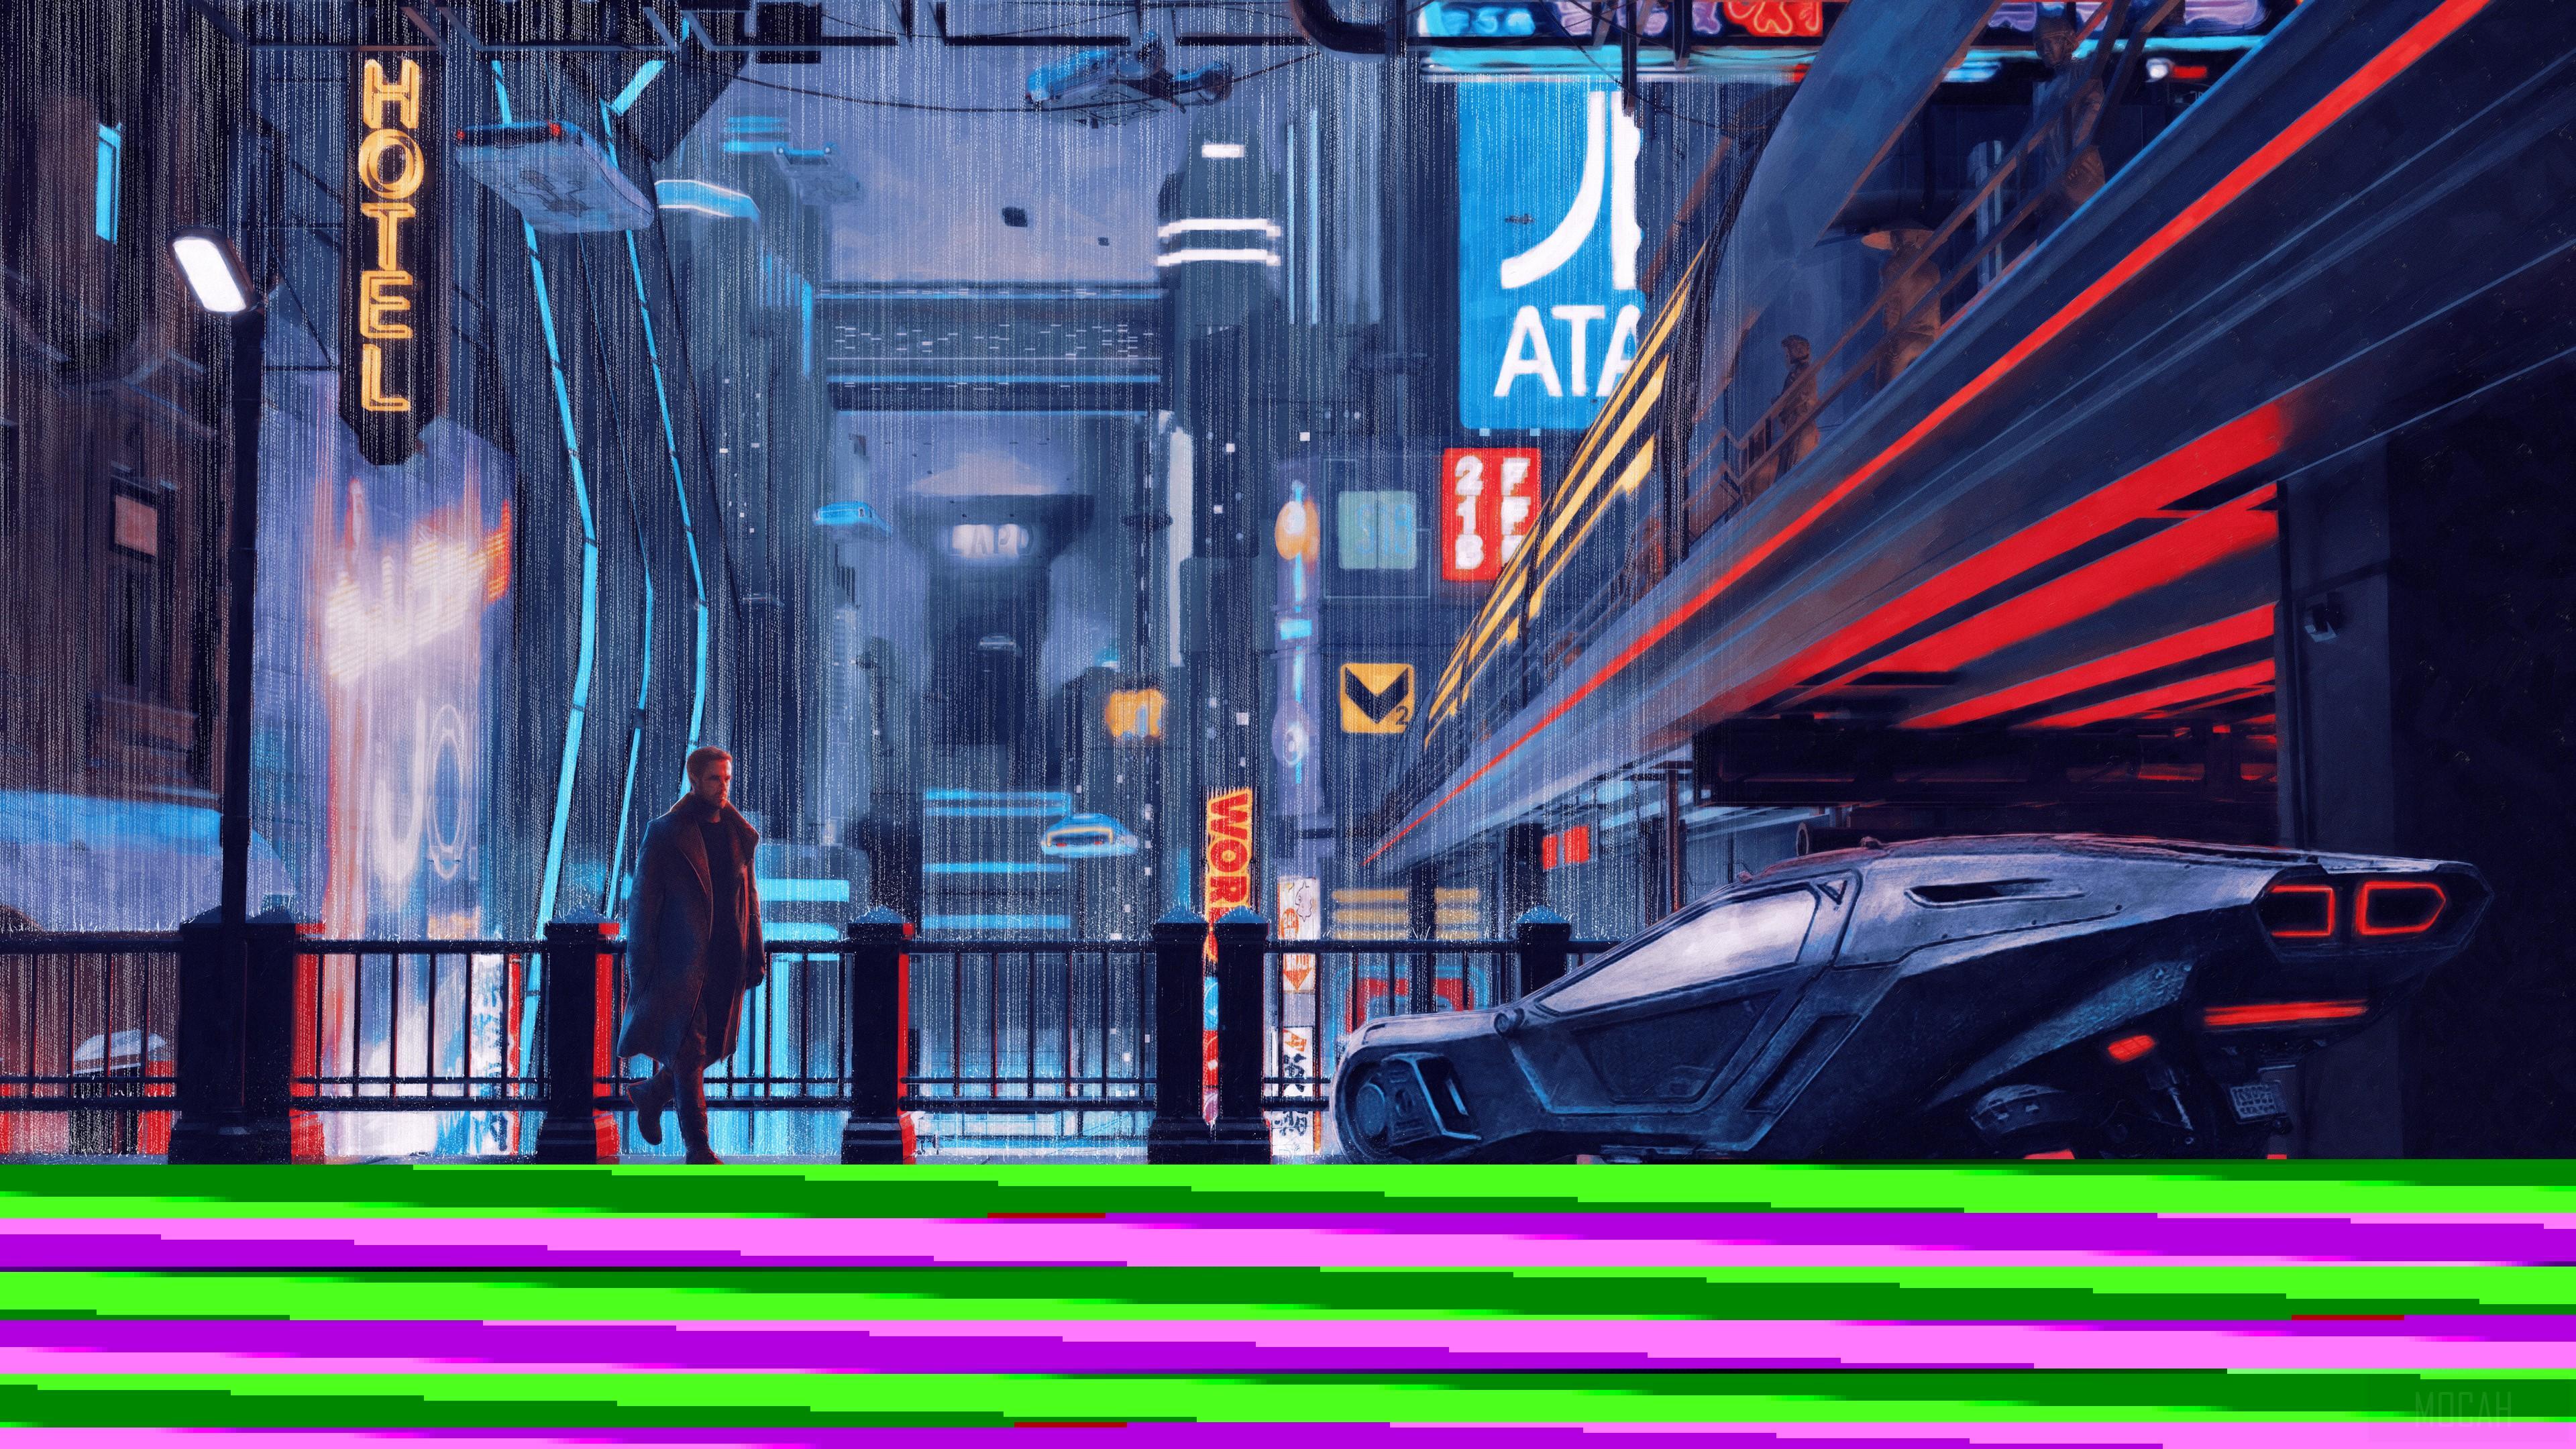 HD wallpaper, Blade Runner 2049 Arts 4K